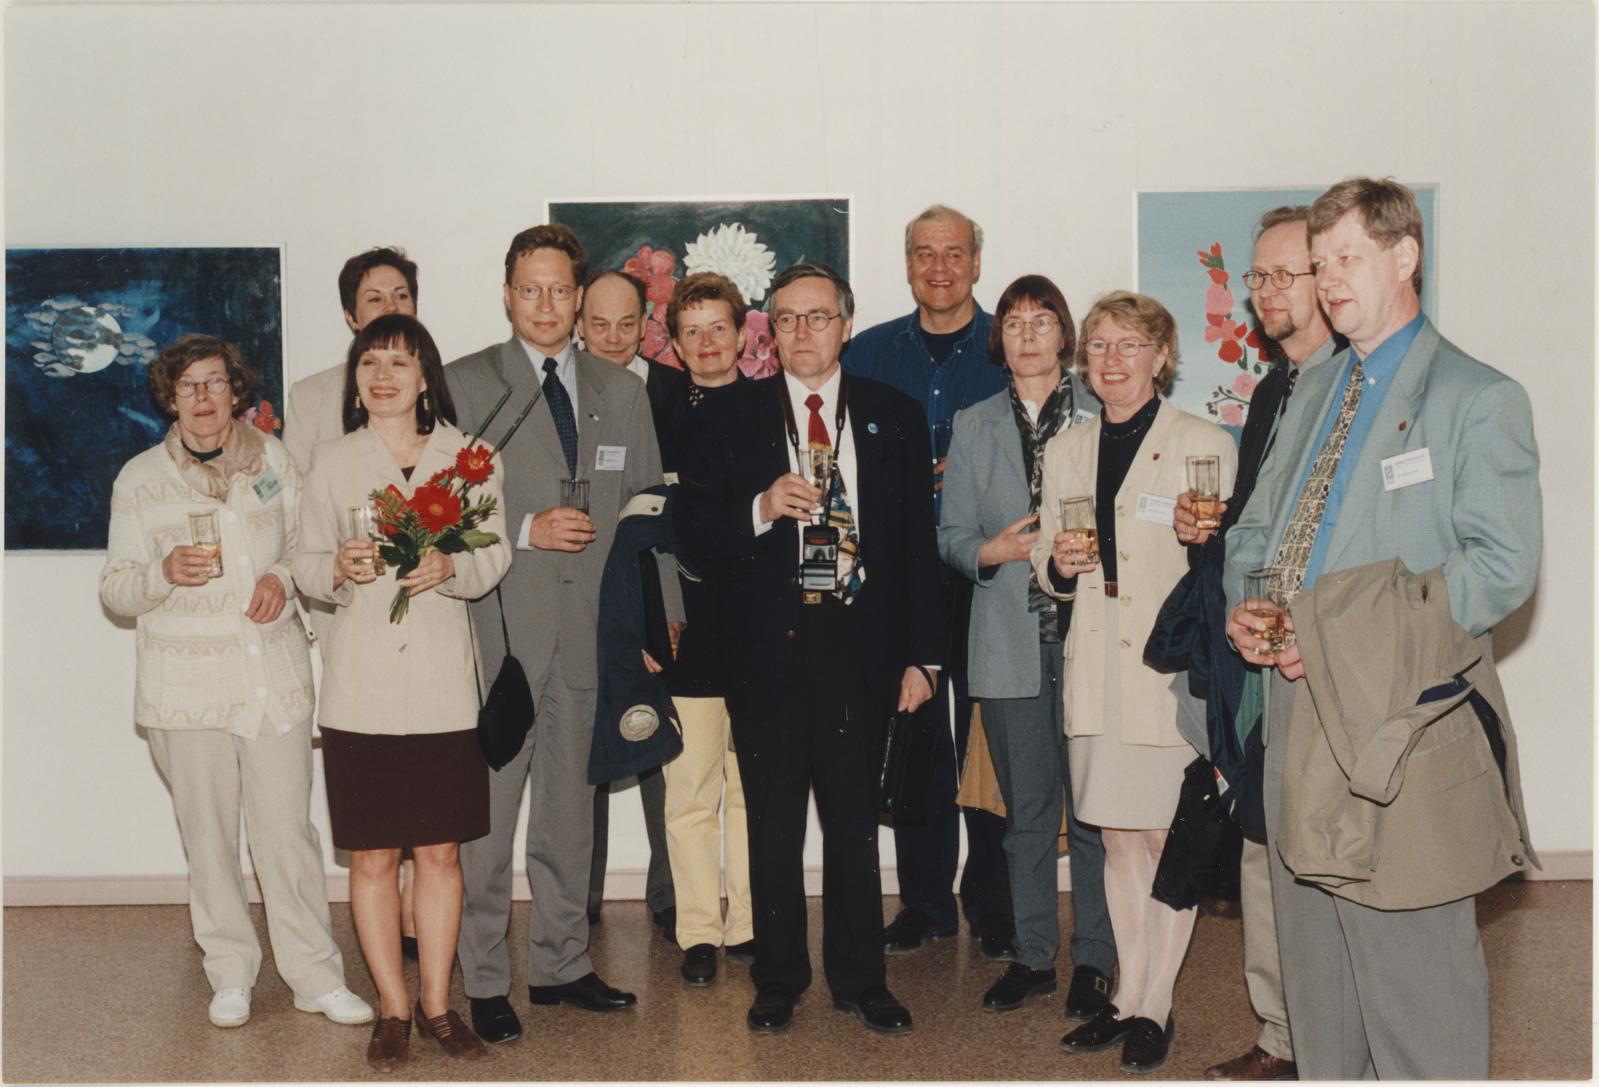 Soome (Tampere) näituse avamine 15.09.1999. Vallikraavi 14.